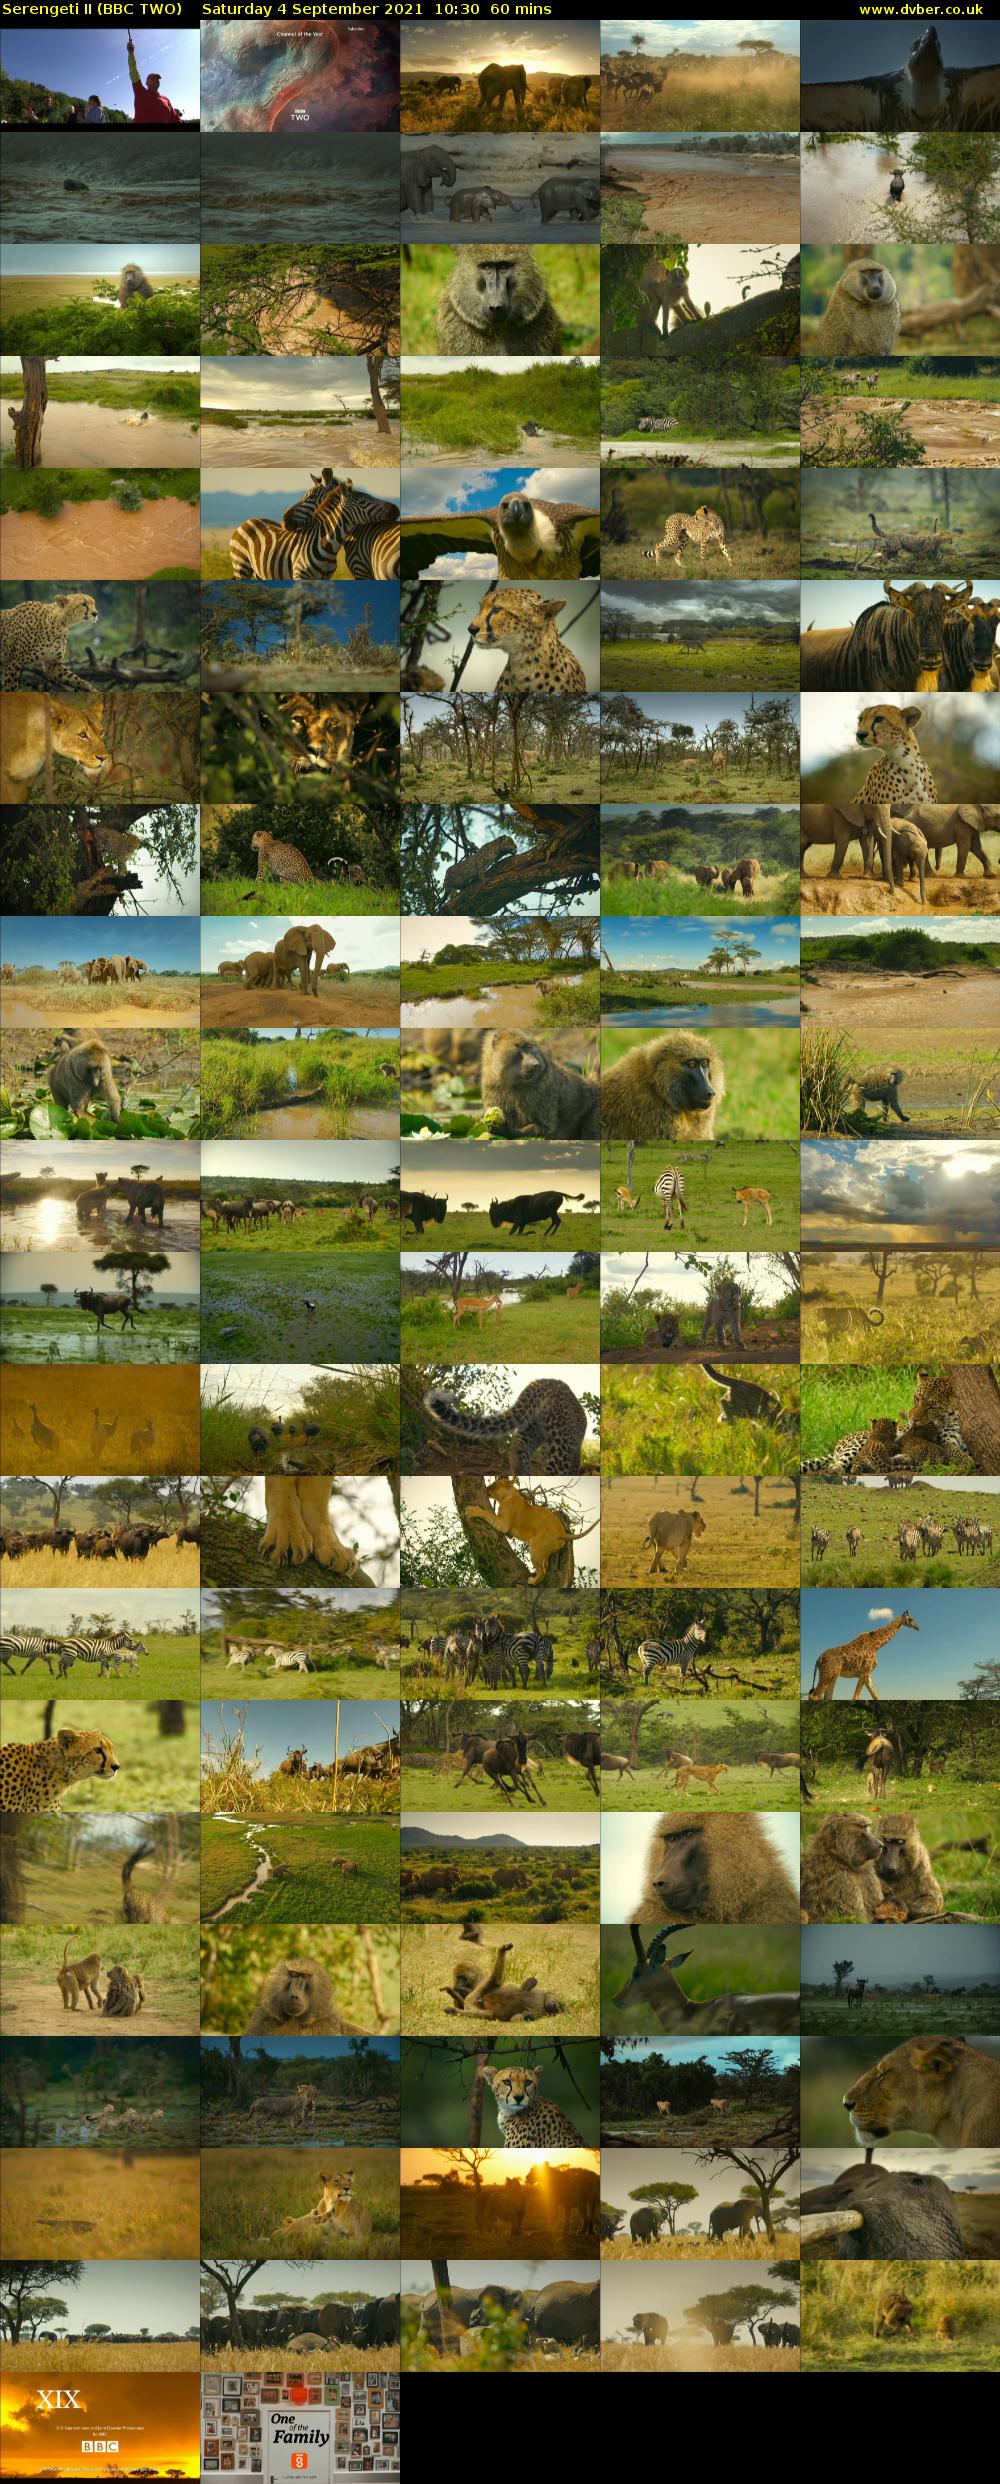 Serengeti II (BBC TWO) Saturday 4 September 2021 10:30 - 11:30